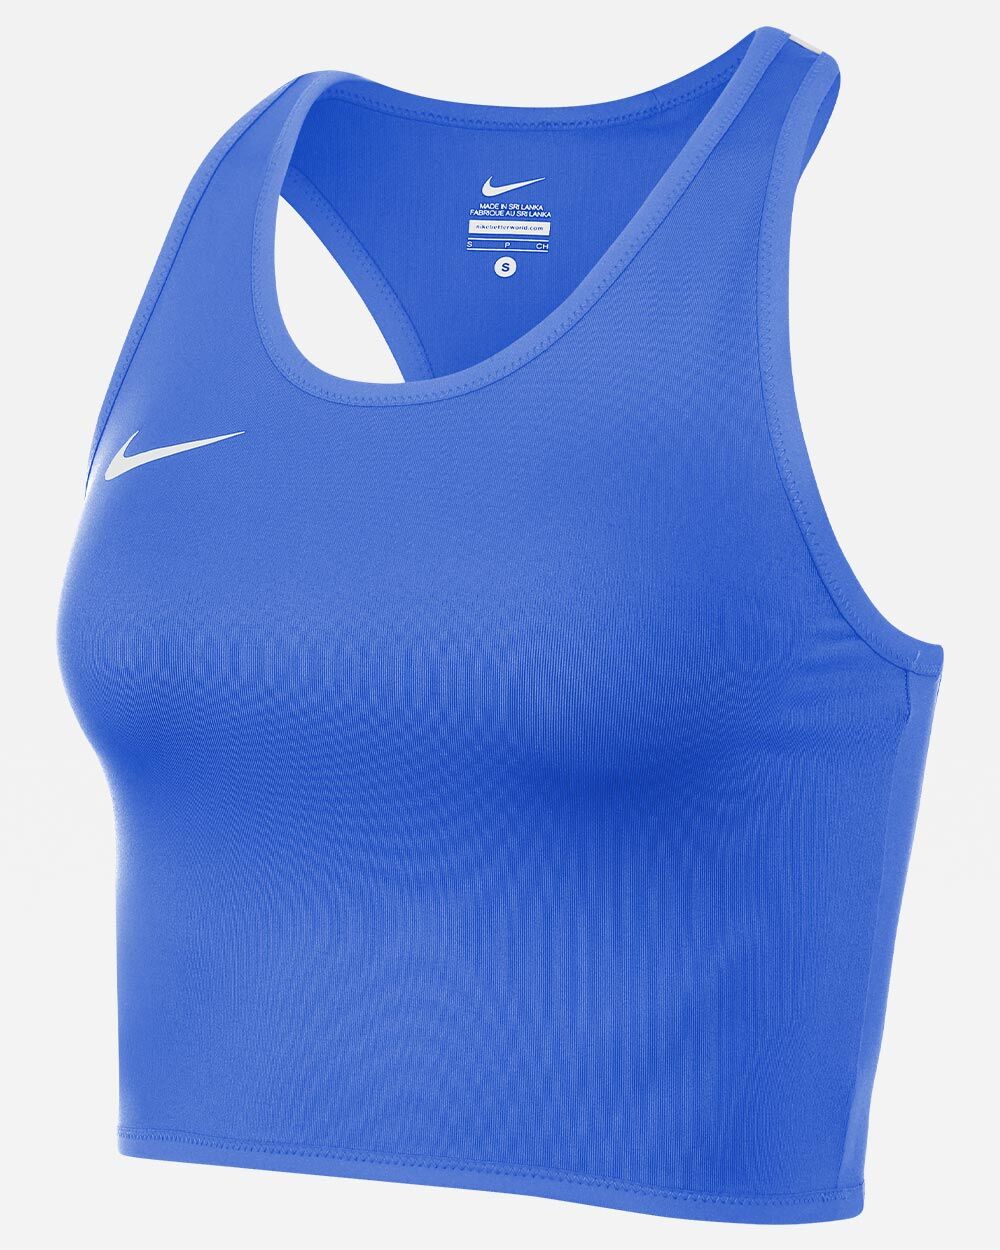 Camiseta sin mangas de running Nike Stock Azul Real para Mujeres - NT0312-463